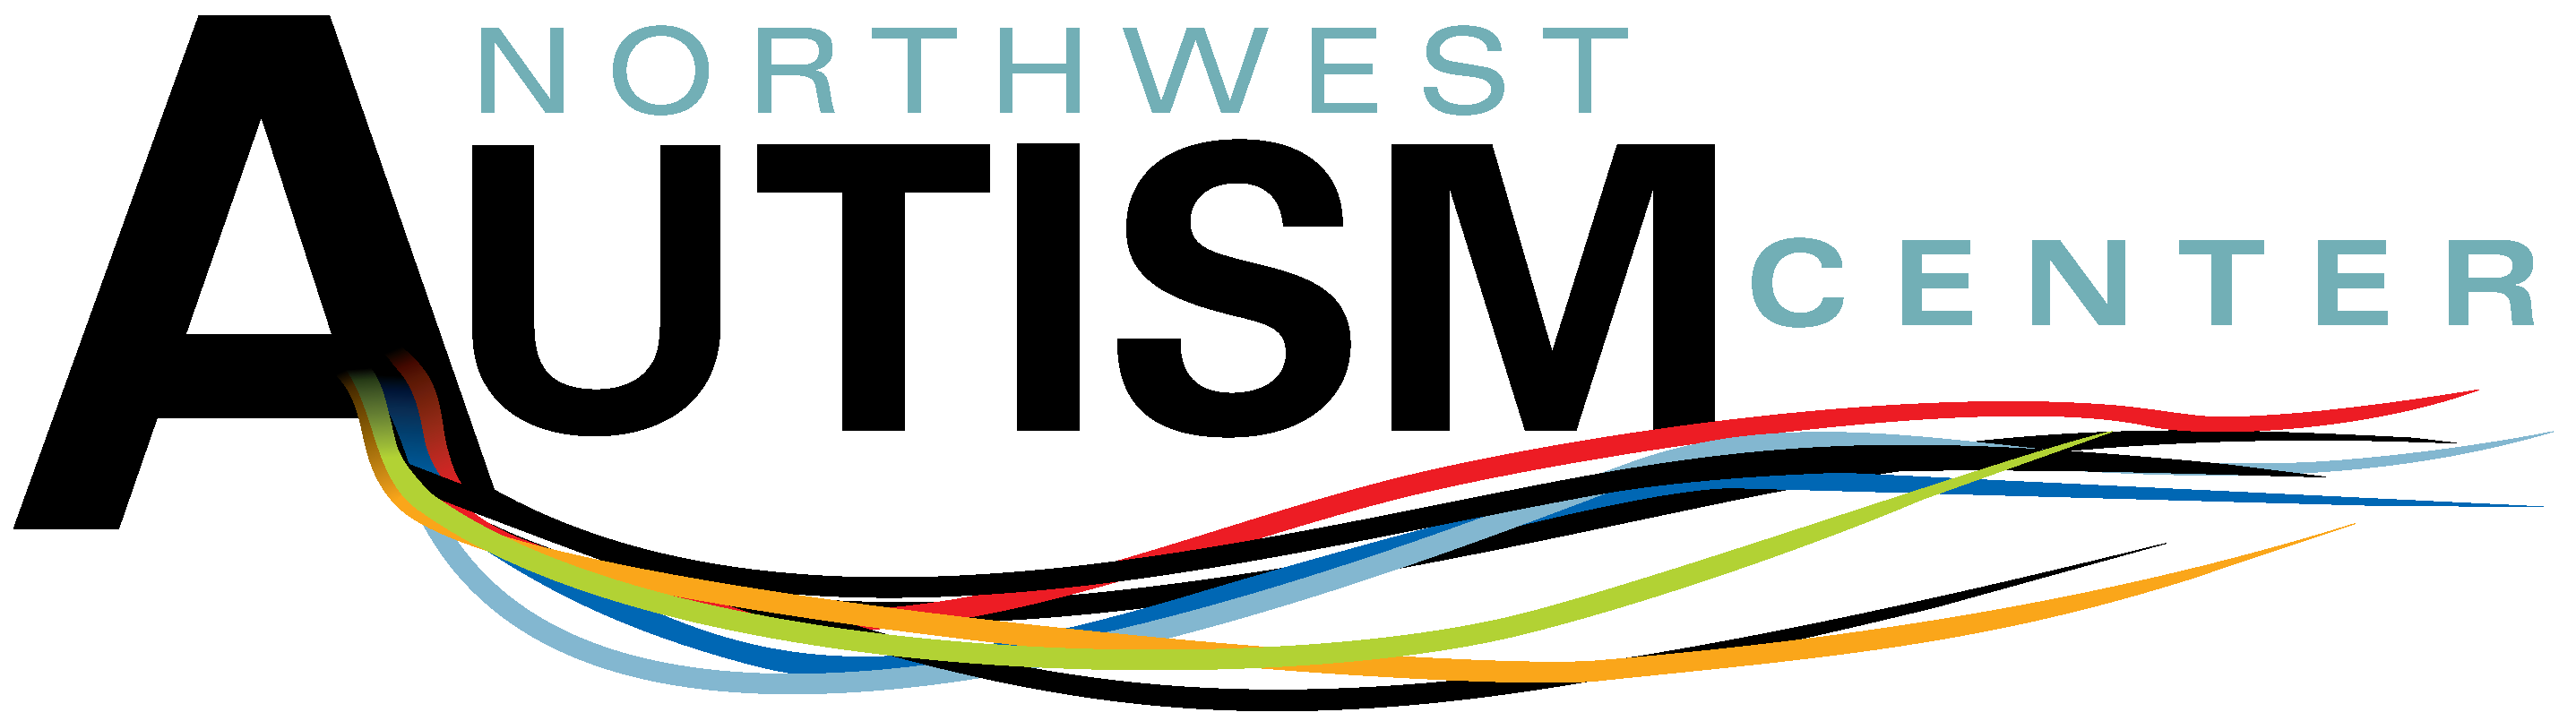 Northwest Autism Center logo